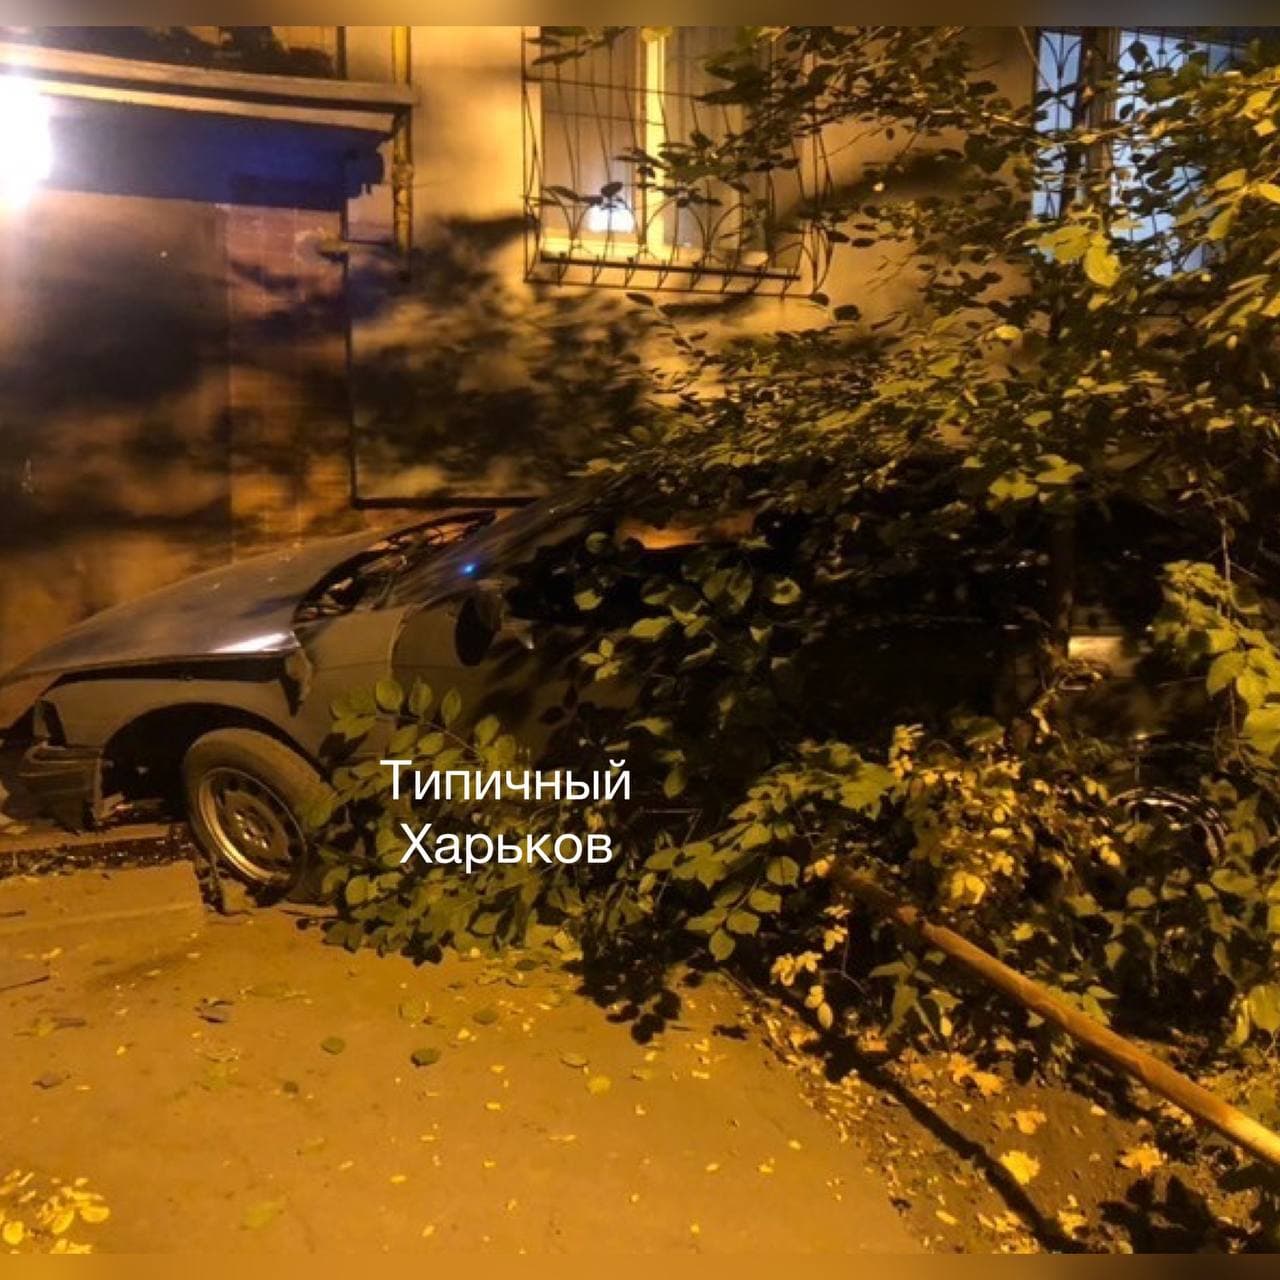 В Харькове пьяный водитель на BMW протаранил подъезд многоэтажки, оставил там авто и скрылся.